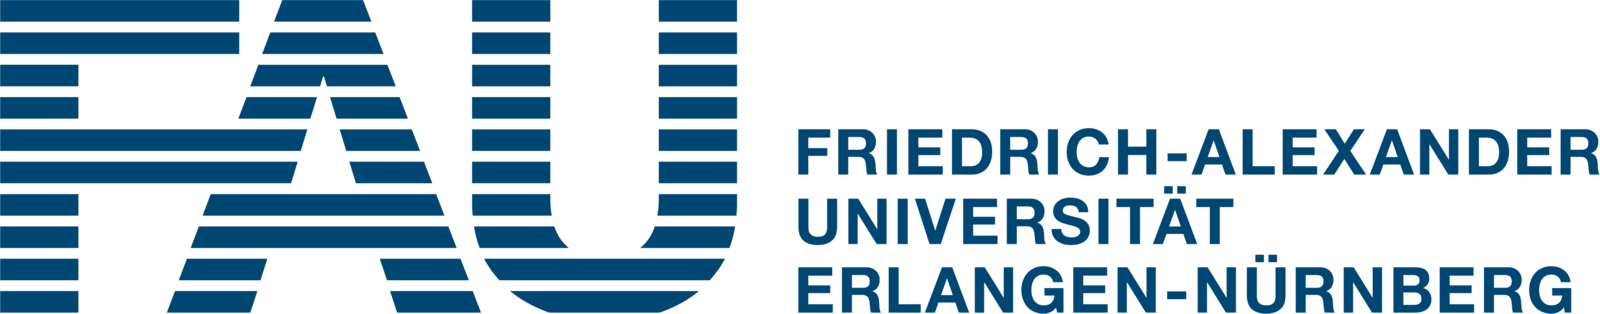 Friedrich-Alexander Universität Erlangen